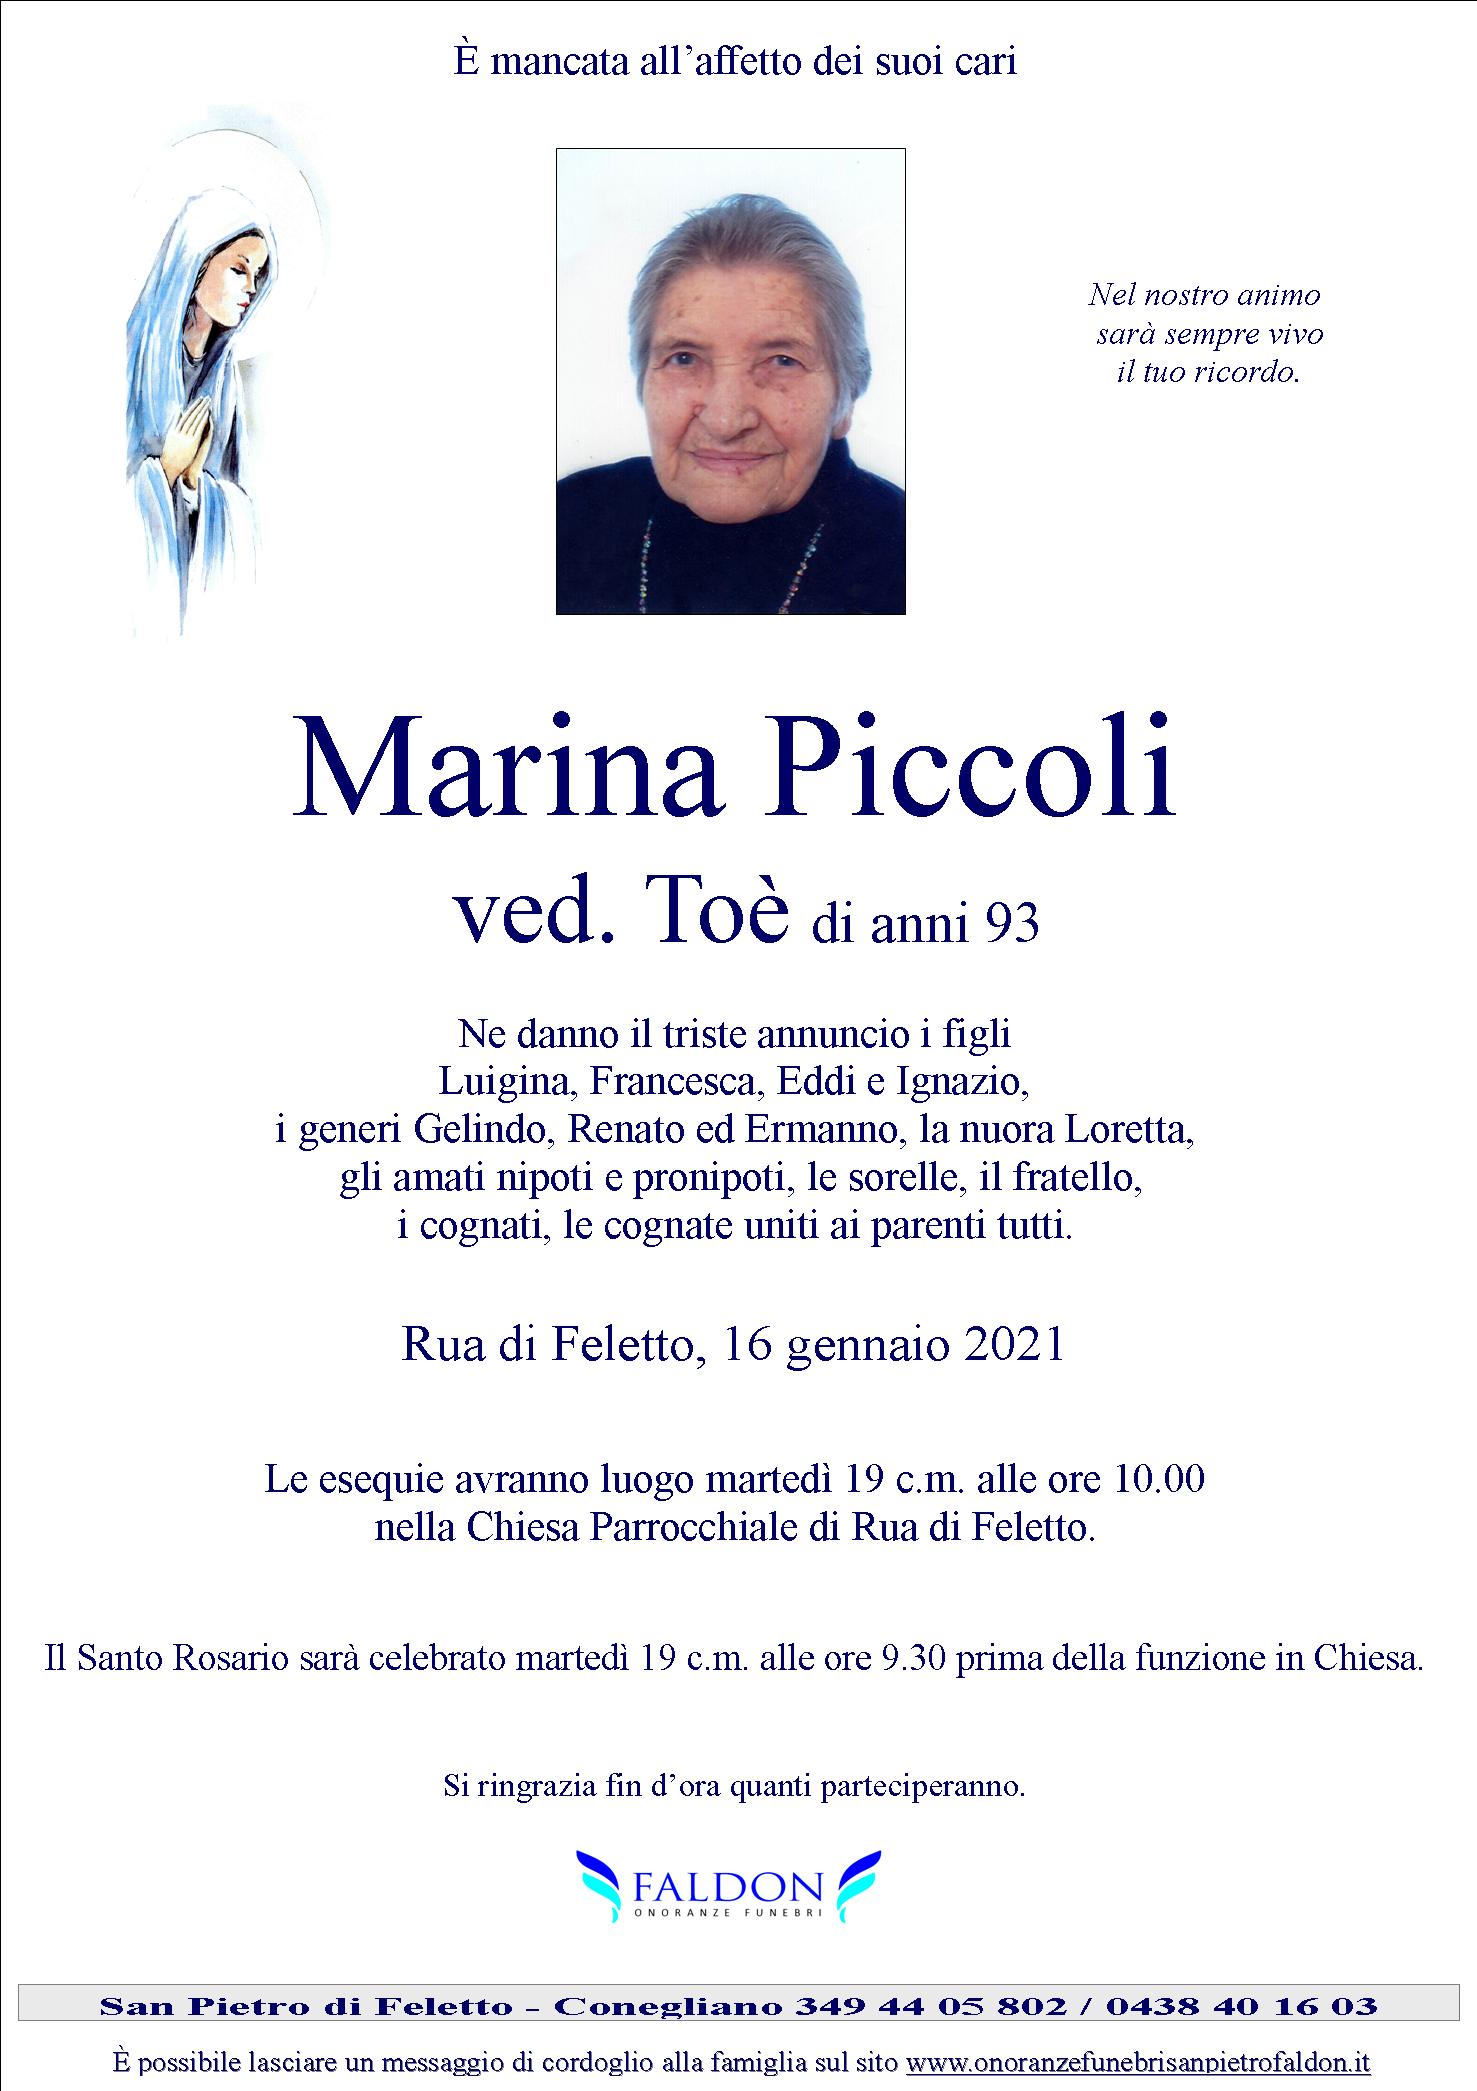 Marina Piccoli